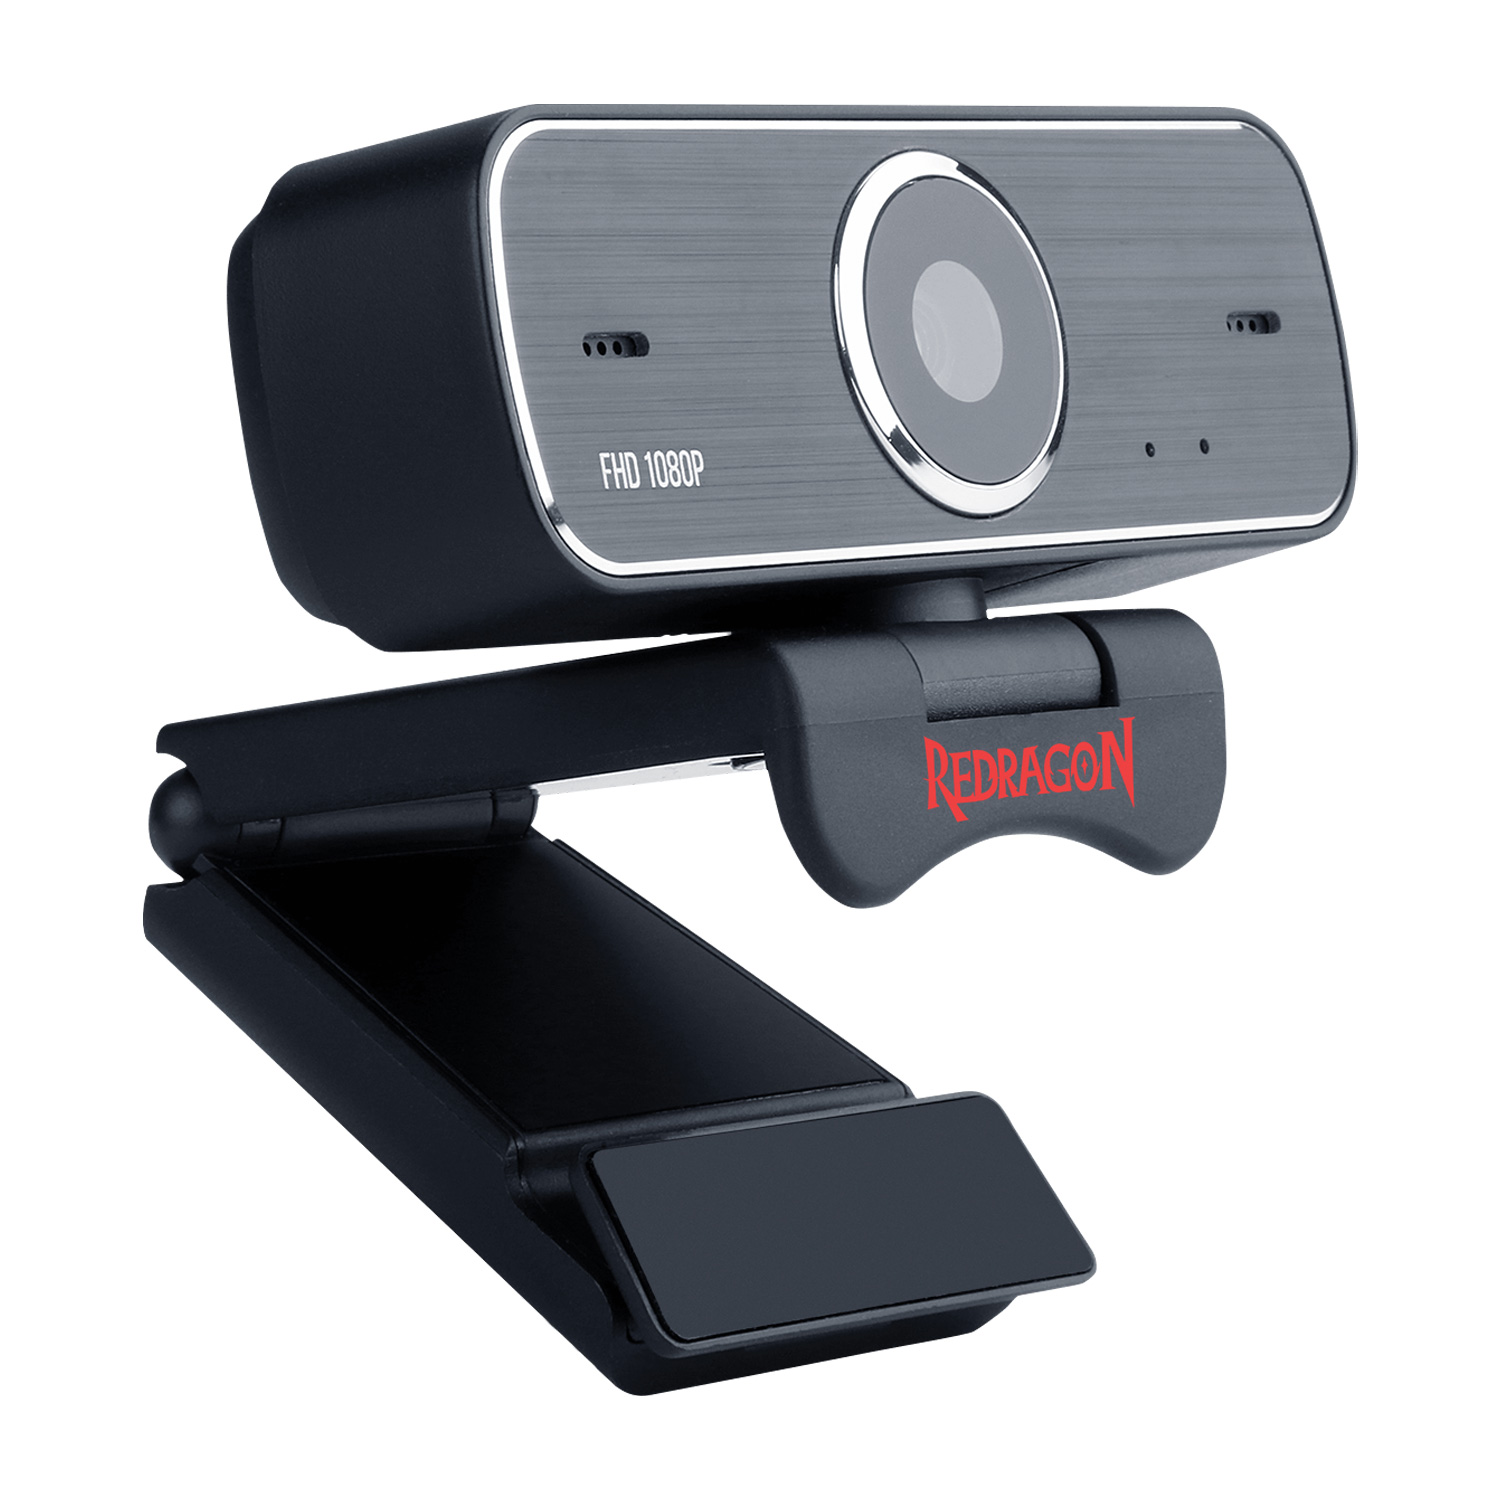 Webcam Redragon Hitman GW800-1 Full HD - Preto (Caixa Danificada)
